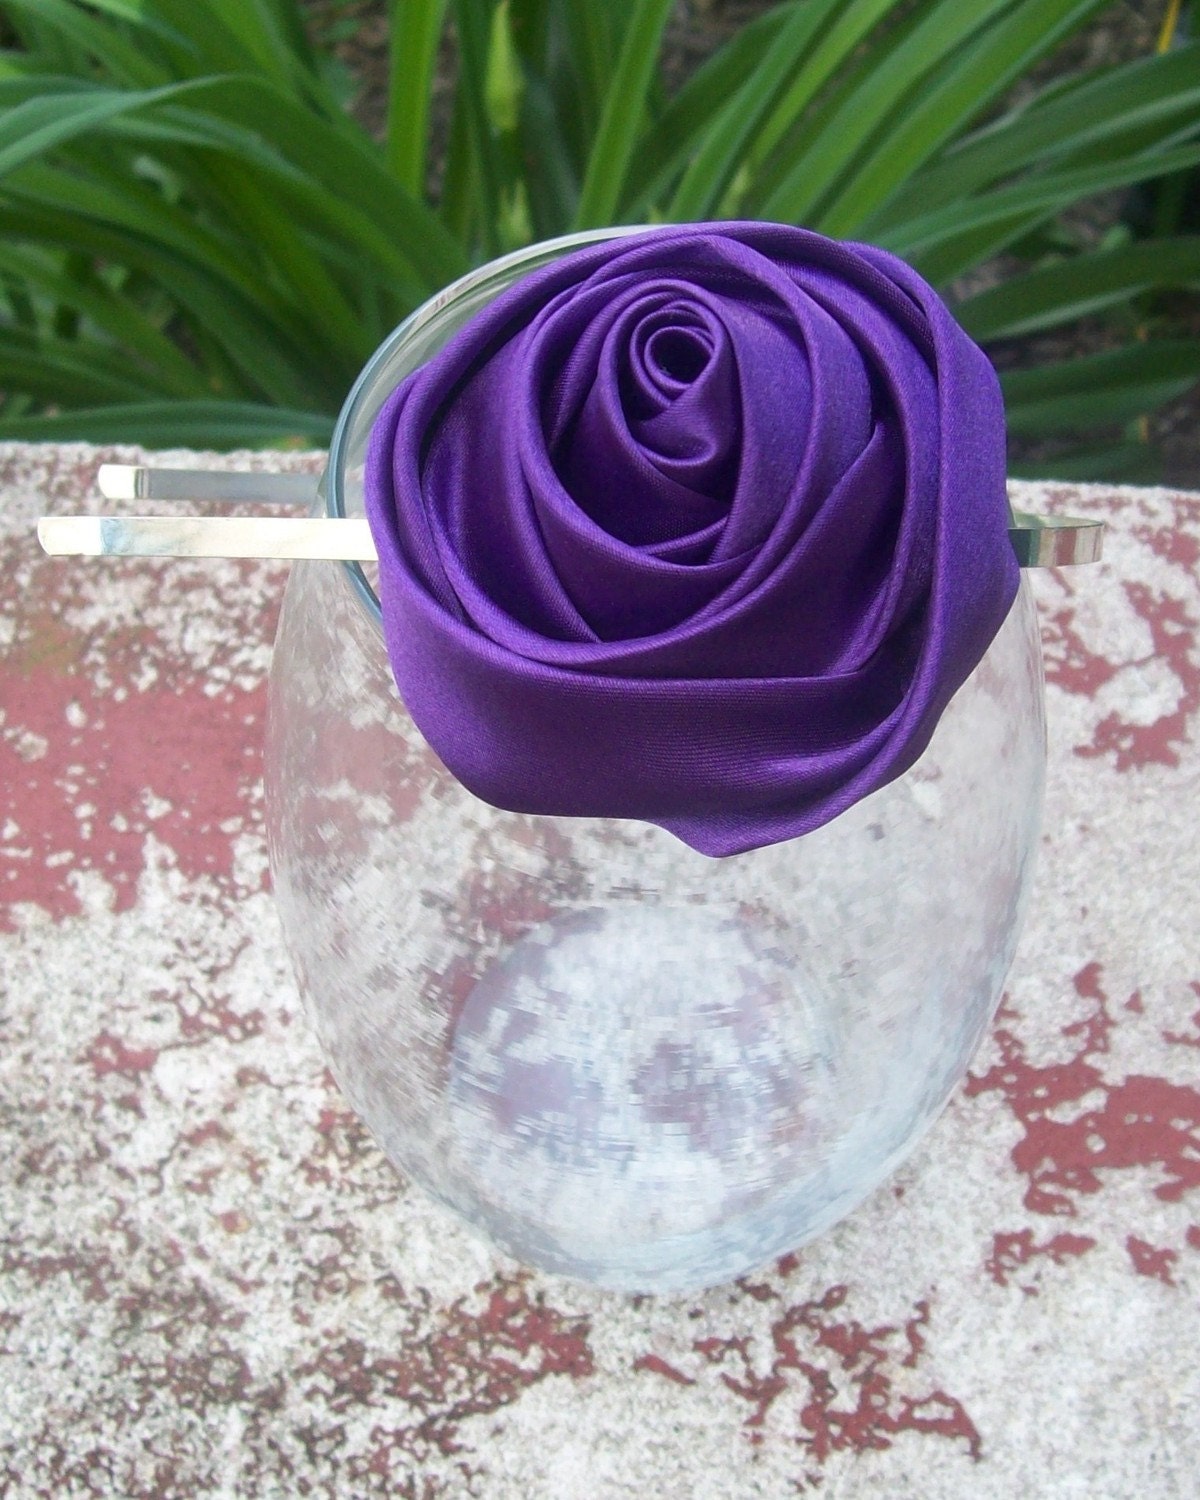 A satin purple rose headband from Etsy.